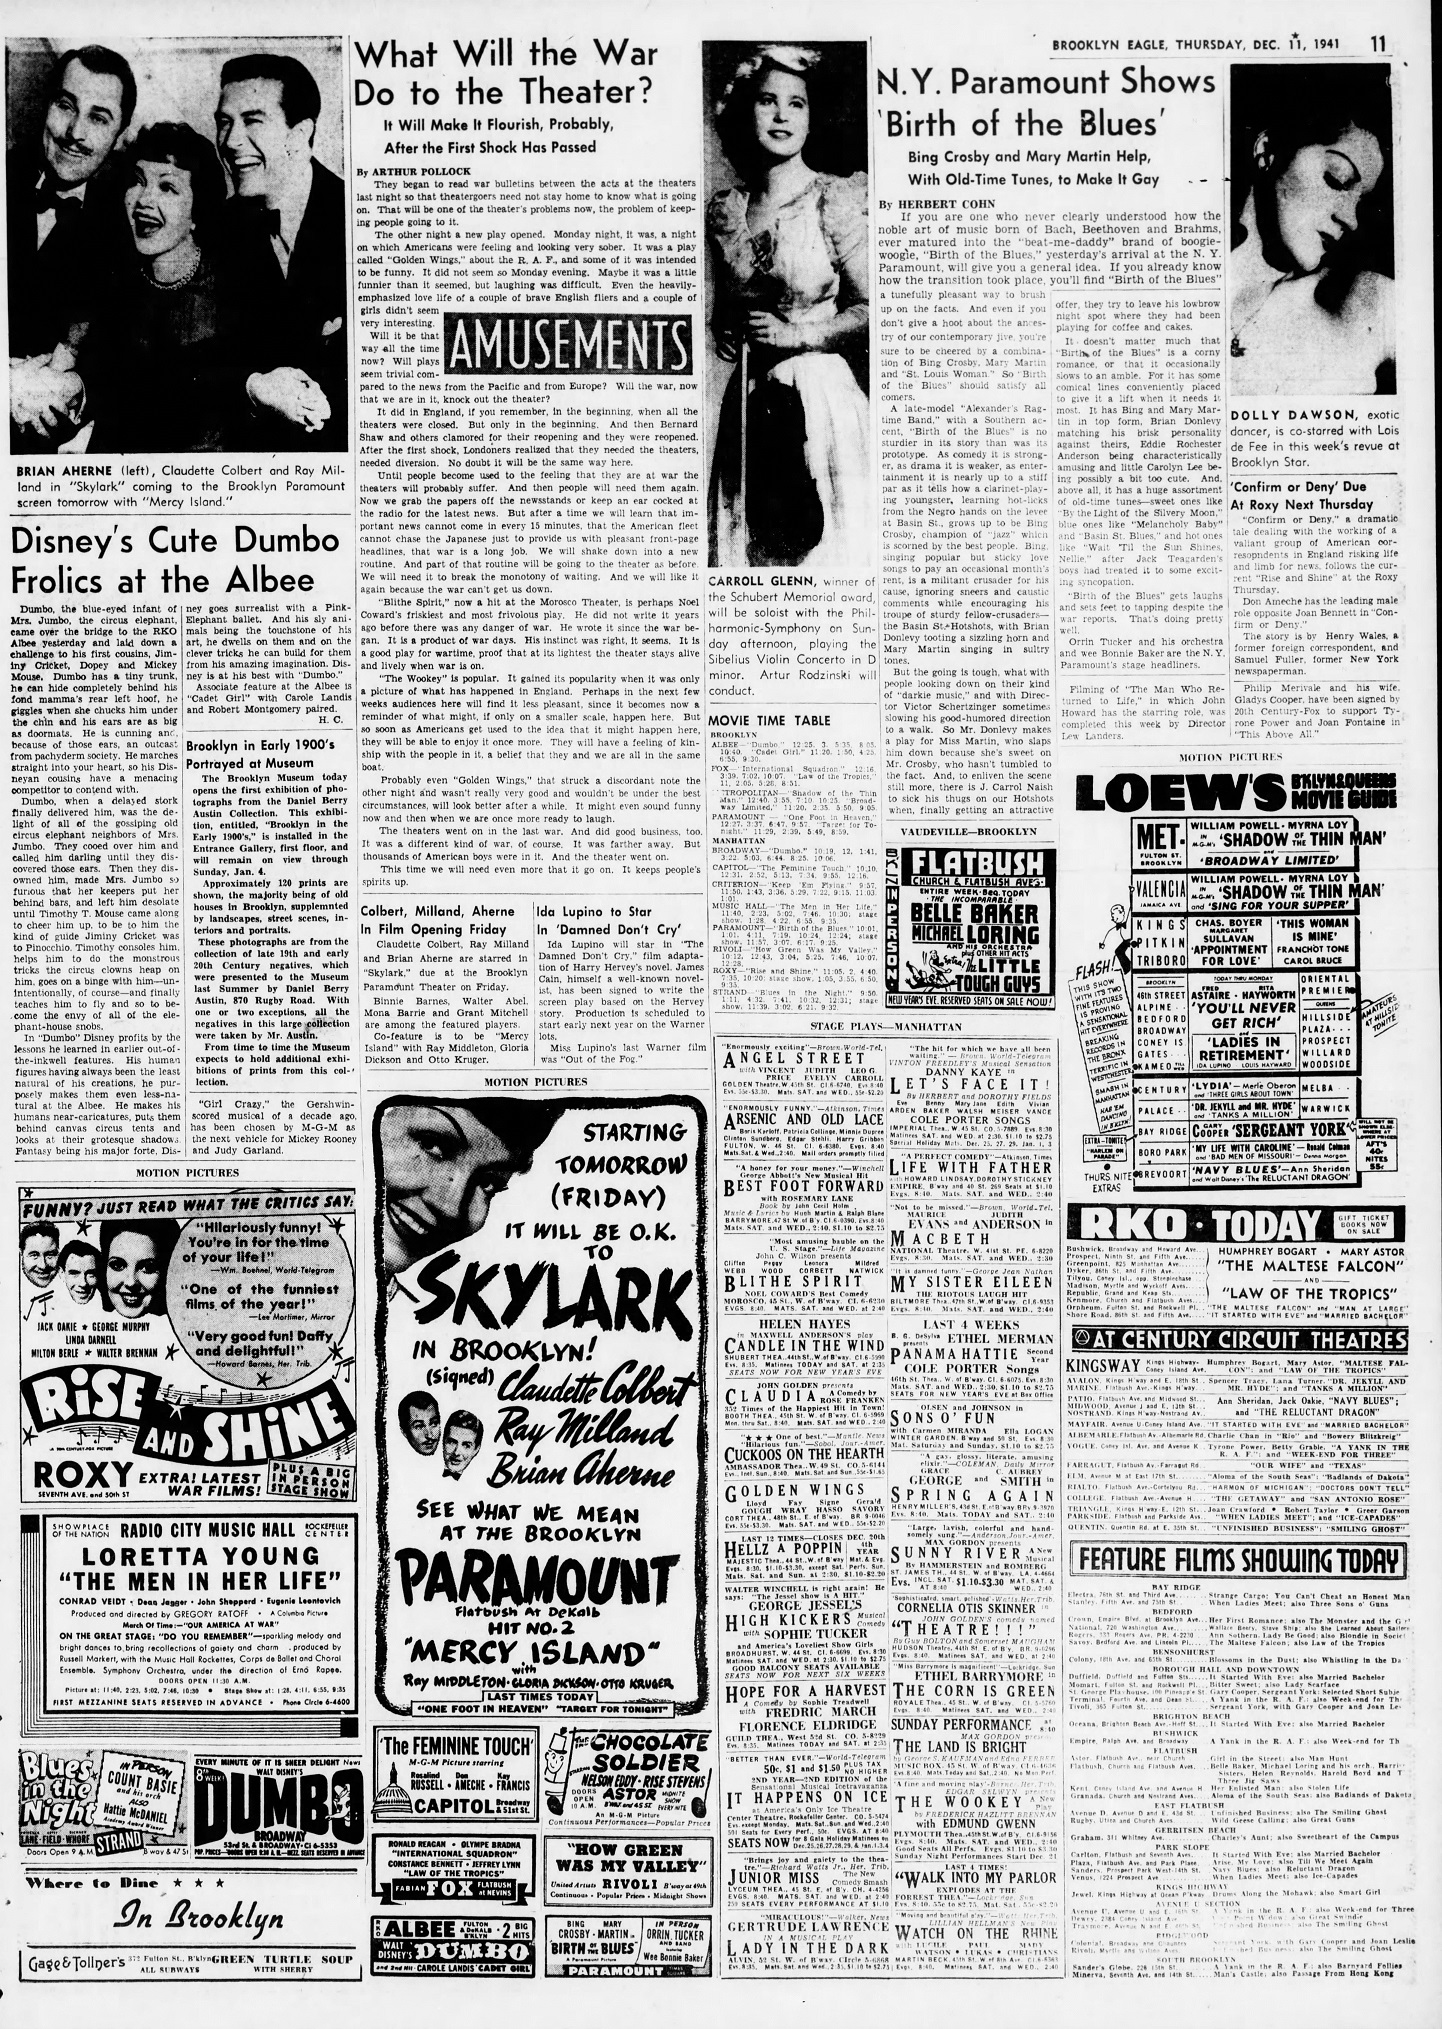 The_Brooklyn_Daily_Eagle_Thu__Dec_11__1941_(3).jpg